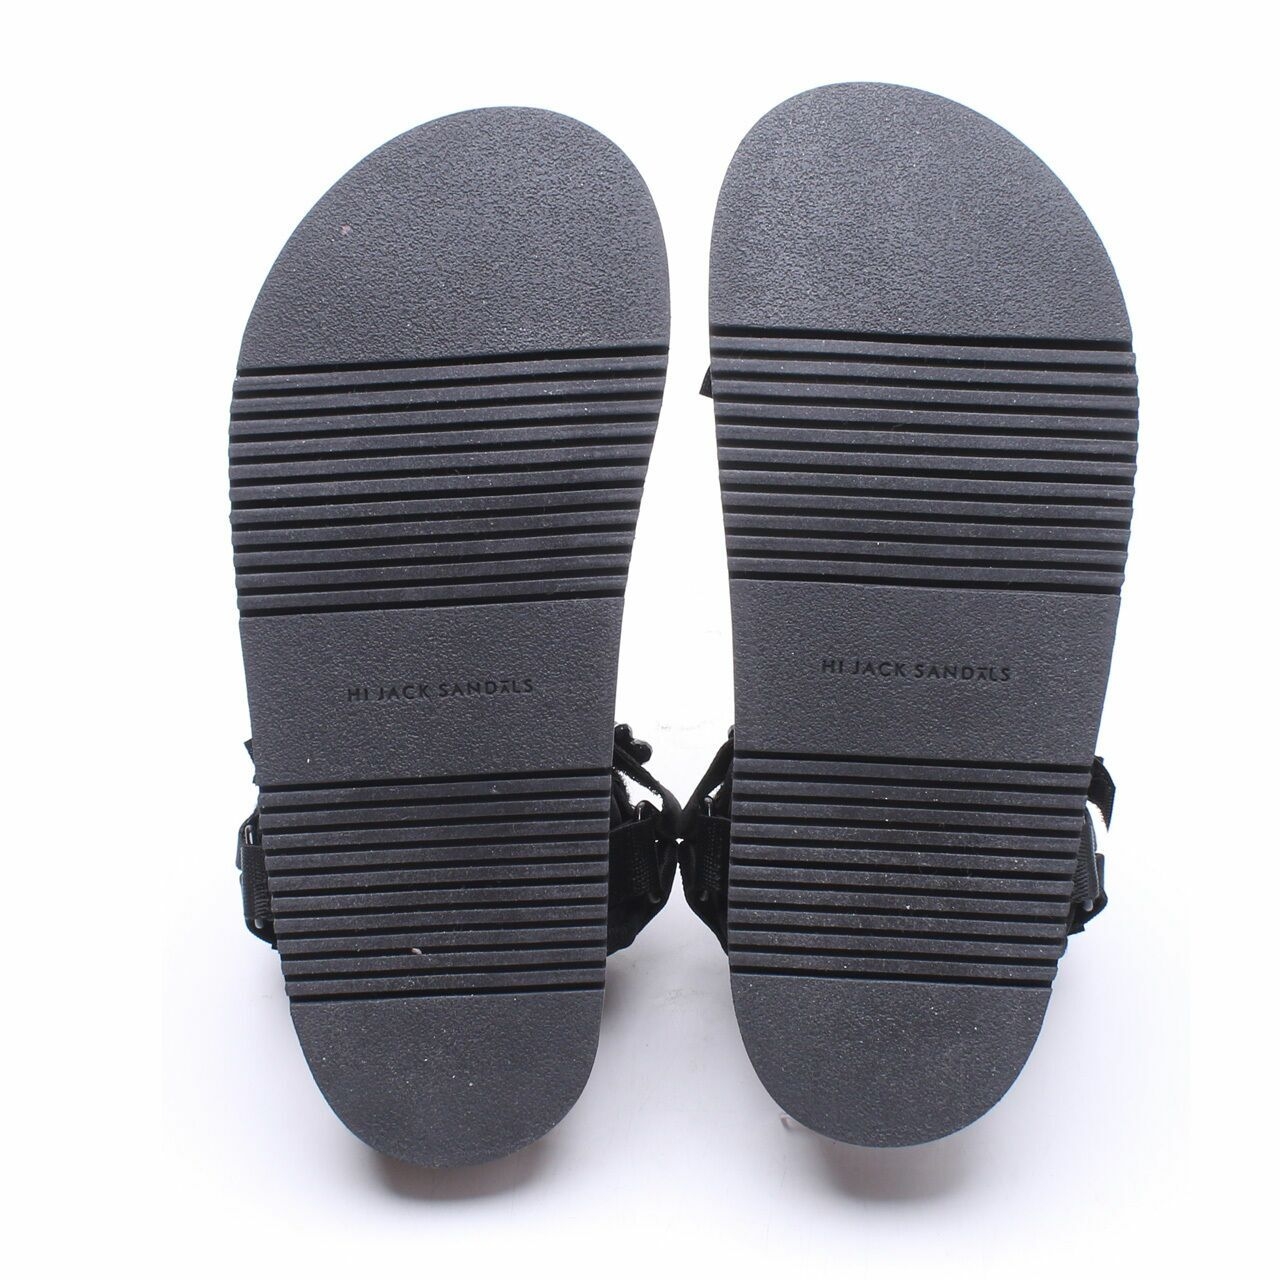 hi jack sandals Margarite Black Sandals